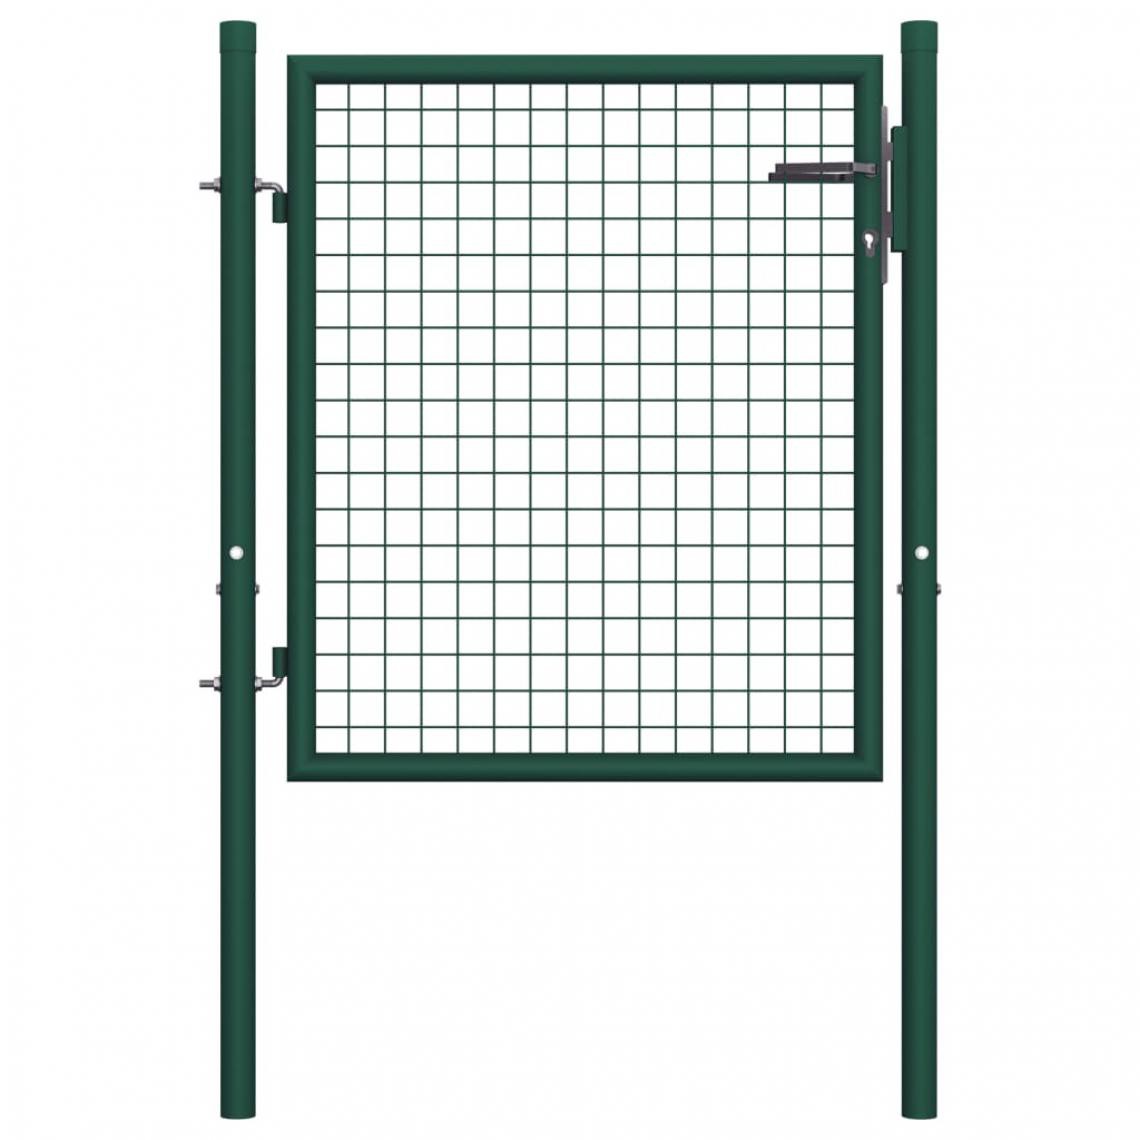 Icaverne - Admirable Clôtures et barrières reference Malé Portail de clôture Acier 100x75 cm Vert - Portillon